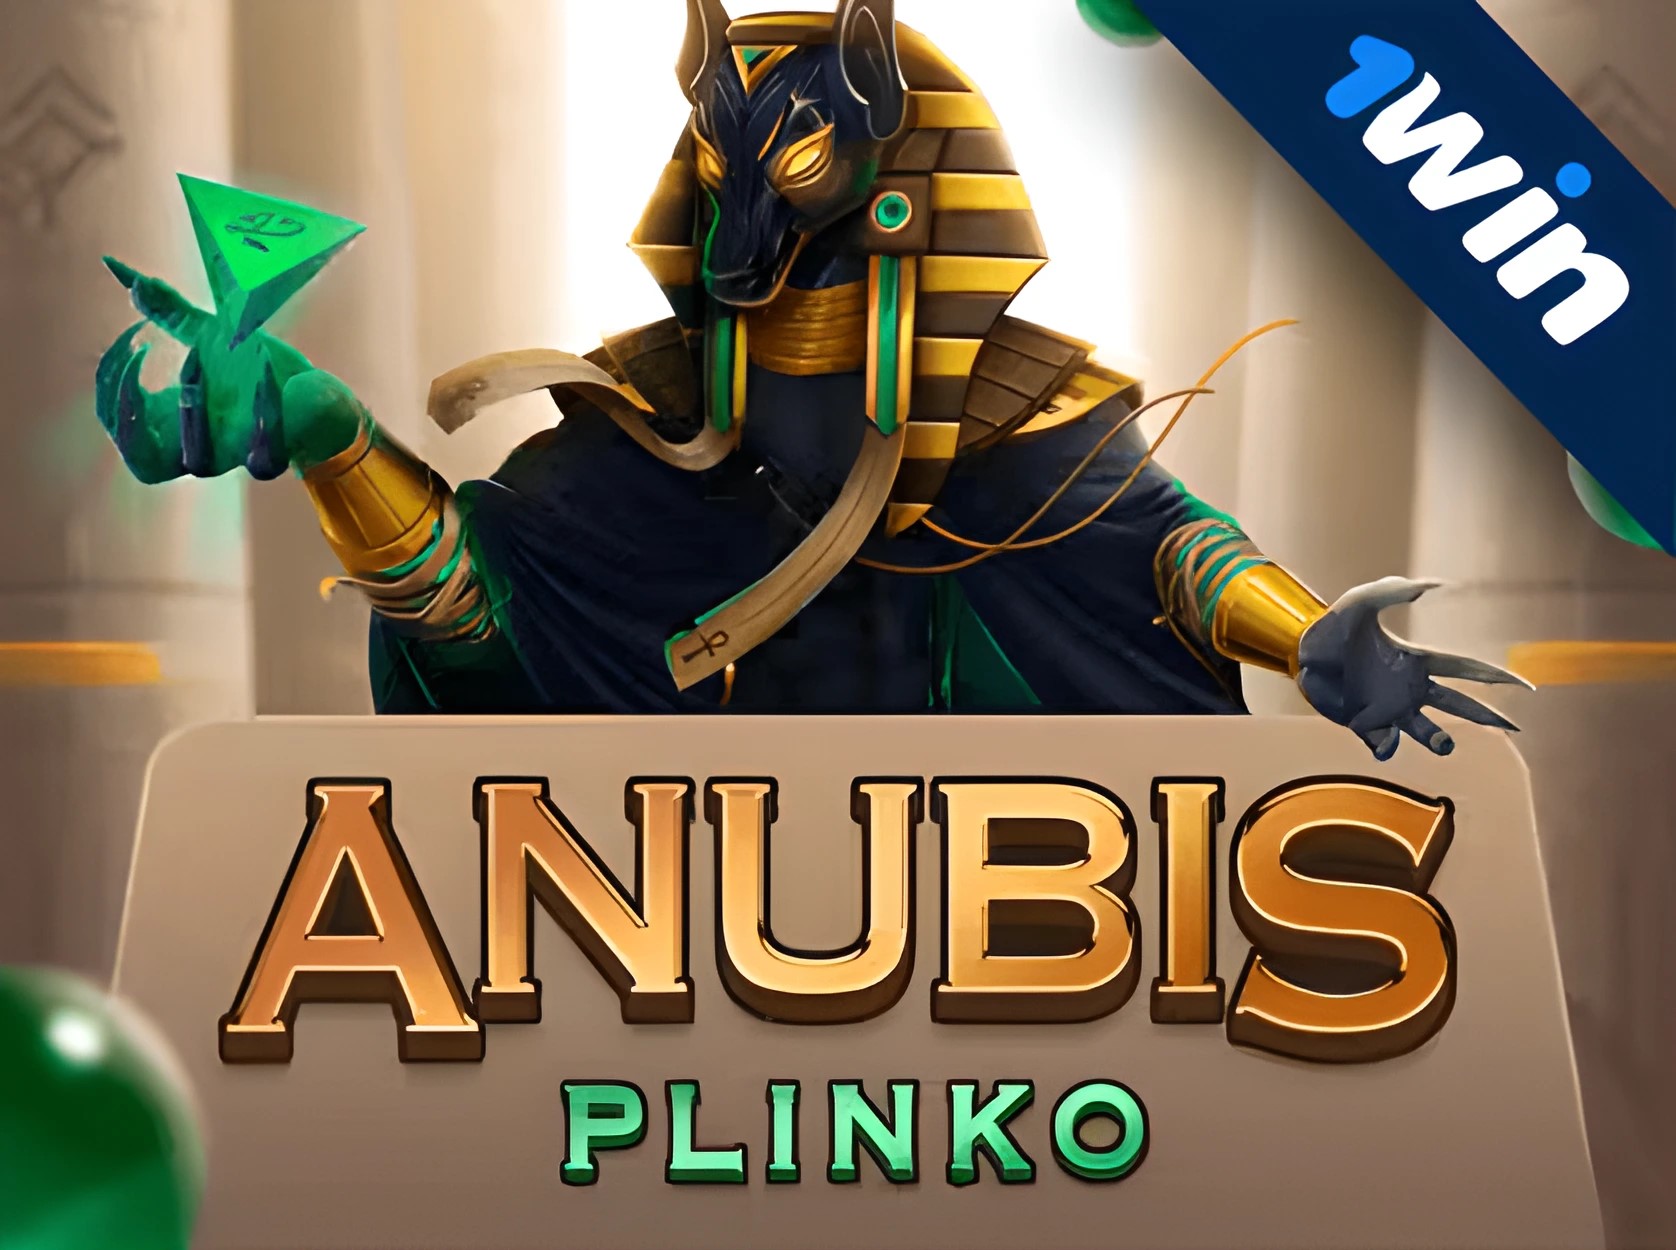 Anubis Plinko slot - nova máquina caça-níqueis de cassino online 1win